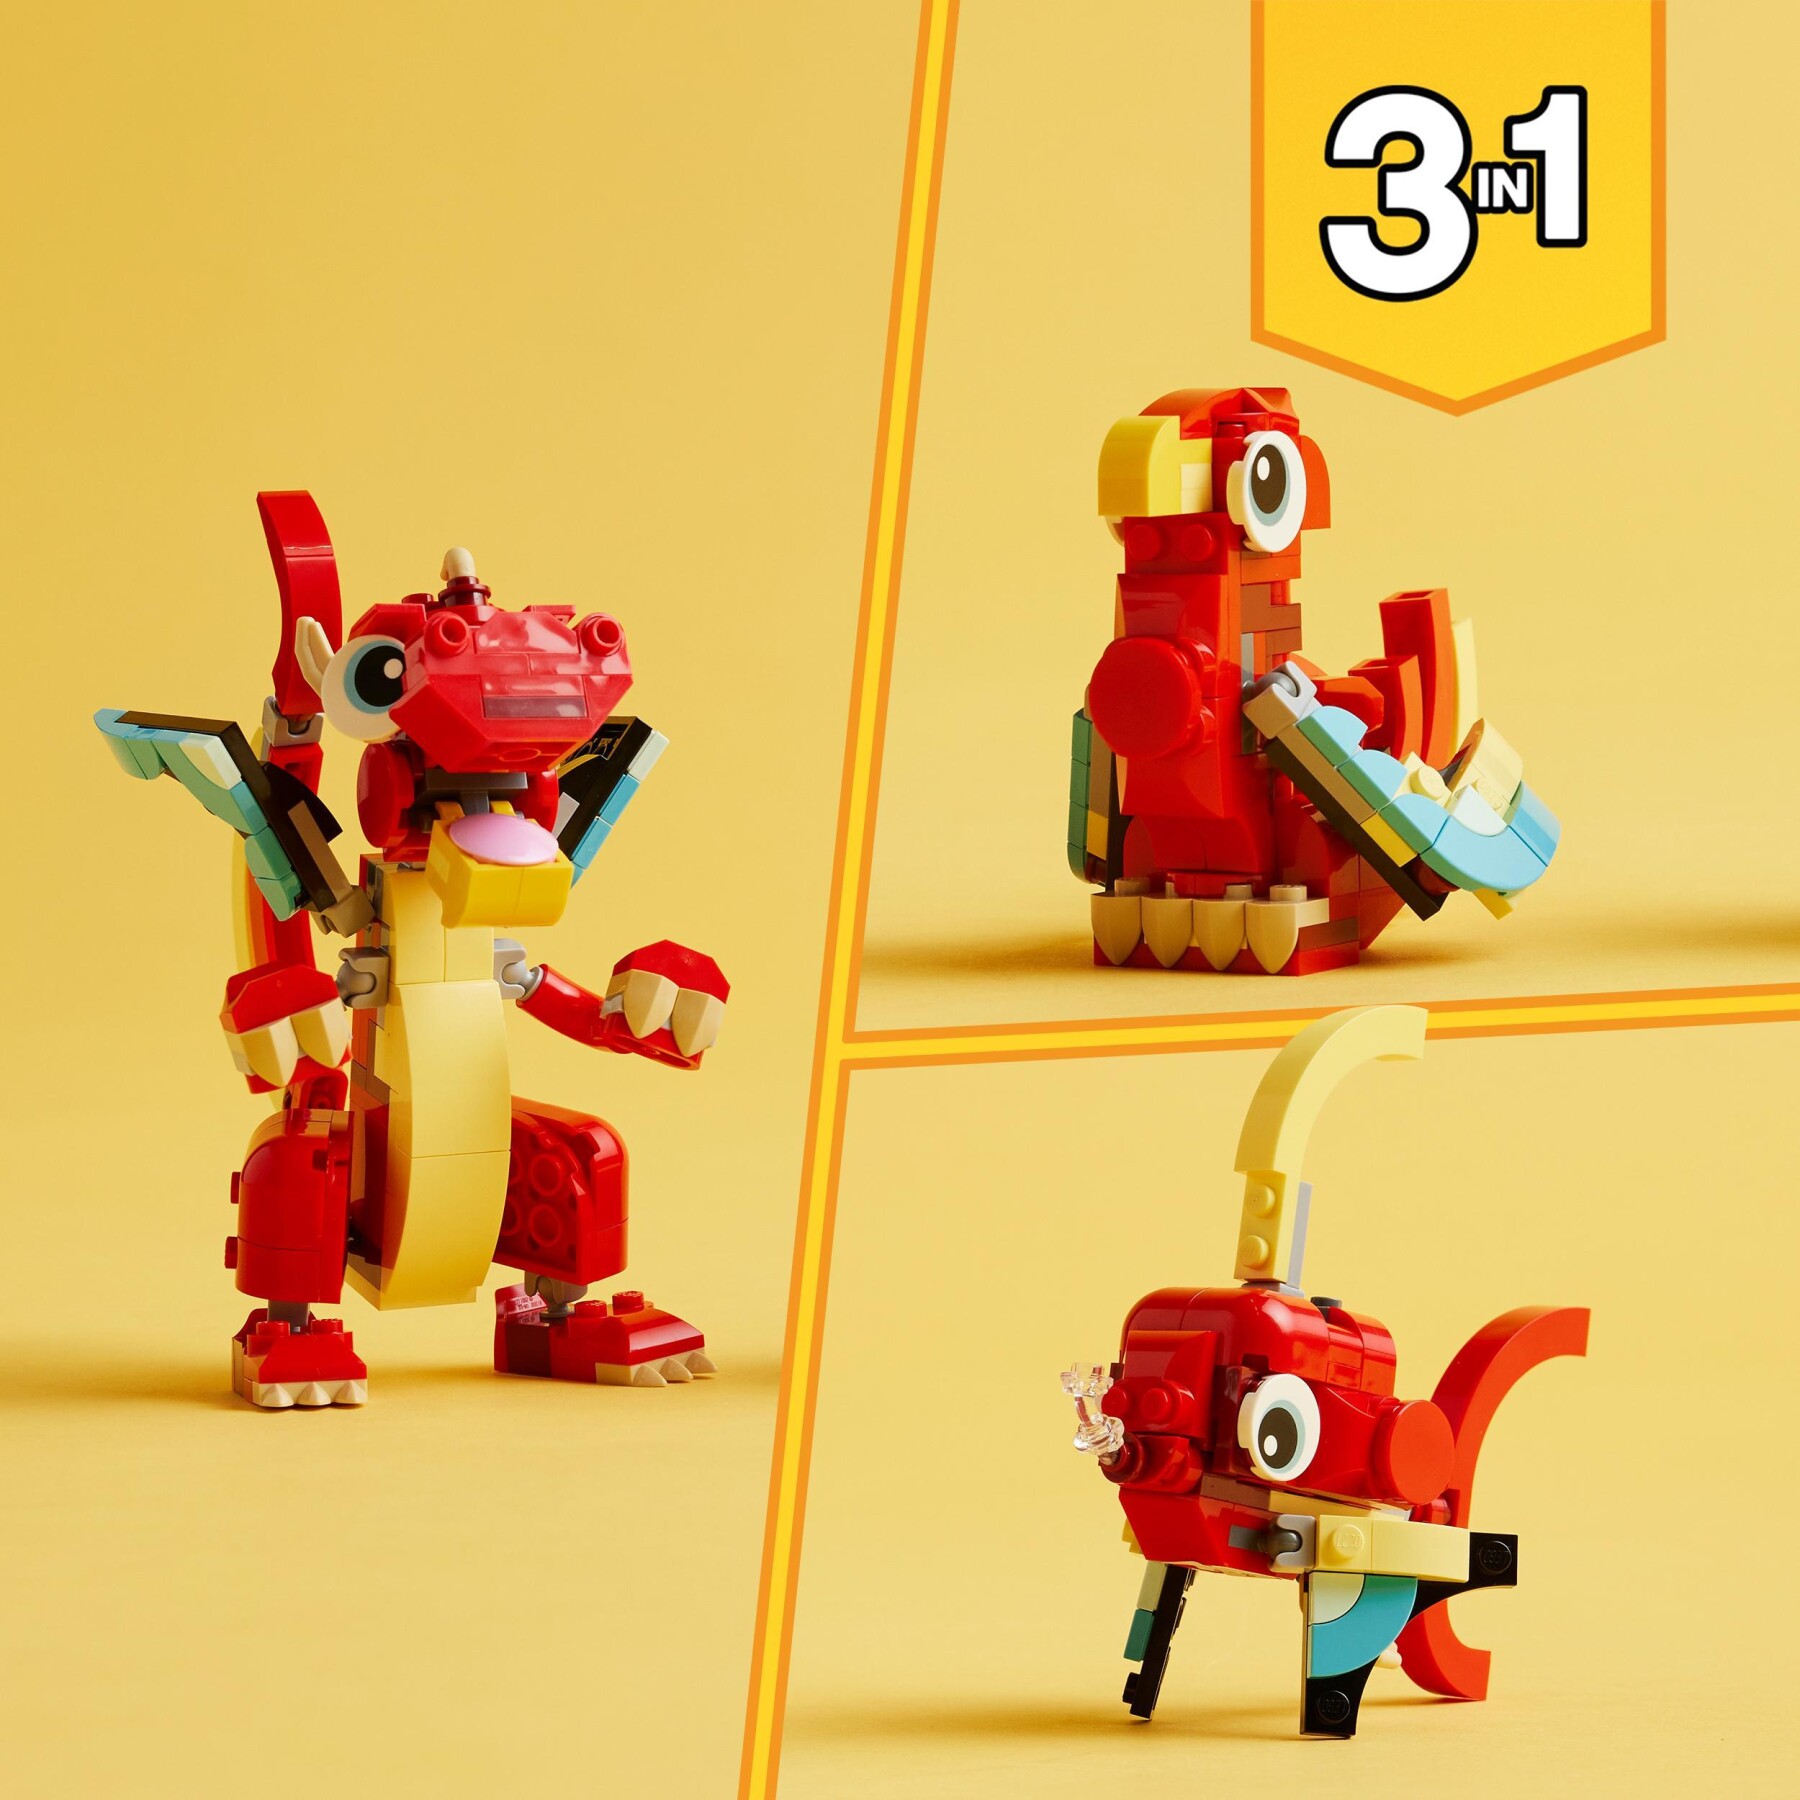 Lego creator 31145 3in1 drago rosso, giochi per bambini di 6+ anni, action figure ricostruibile in pesce e fenice giocattolo - LEGO CREATOR